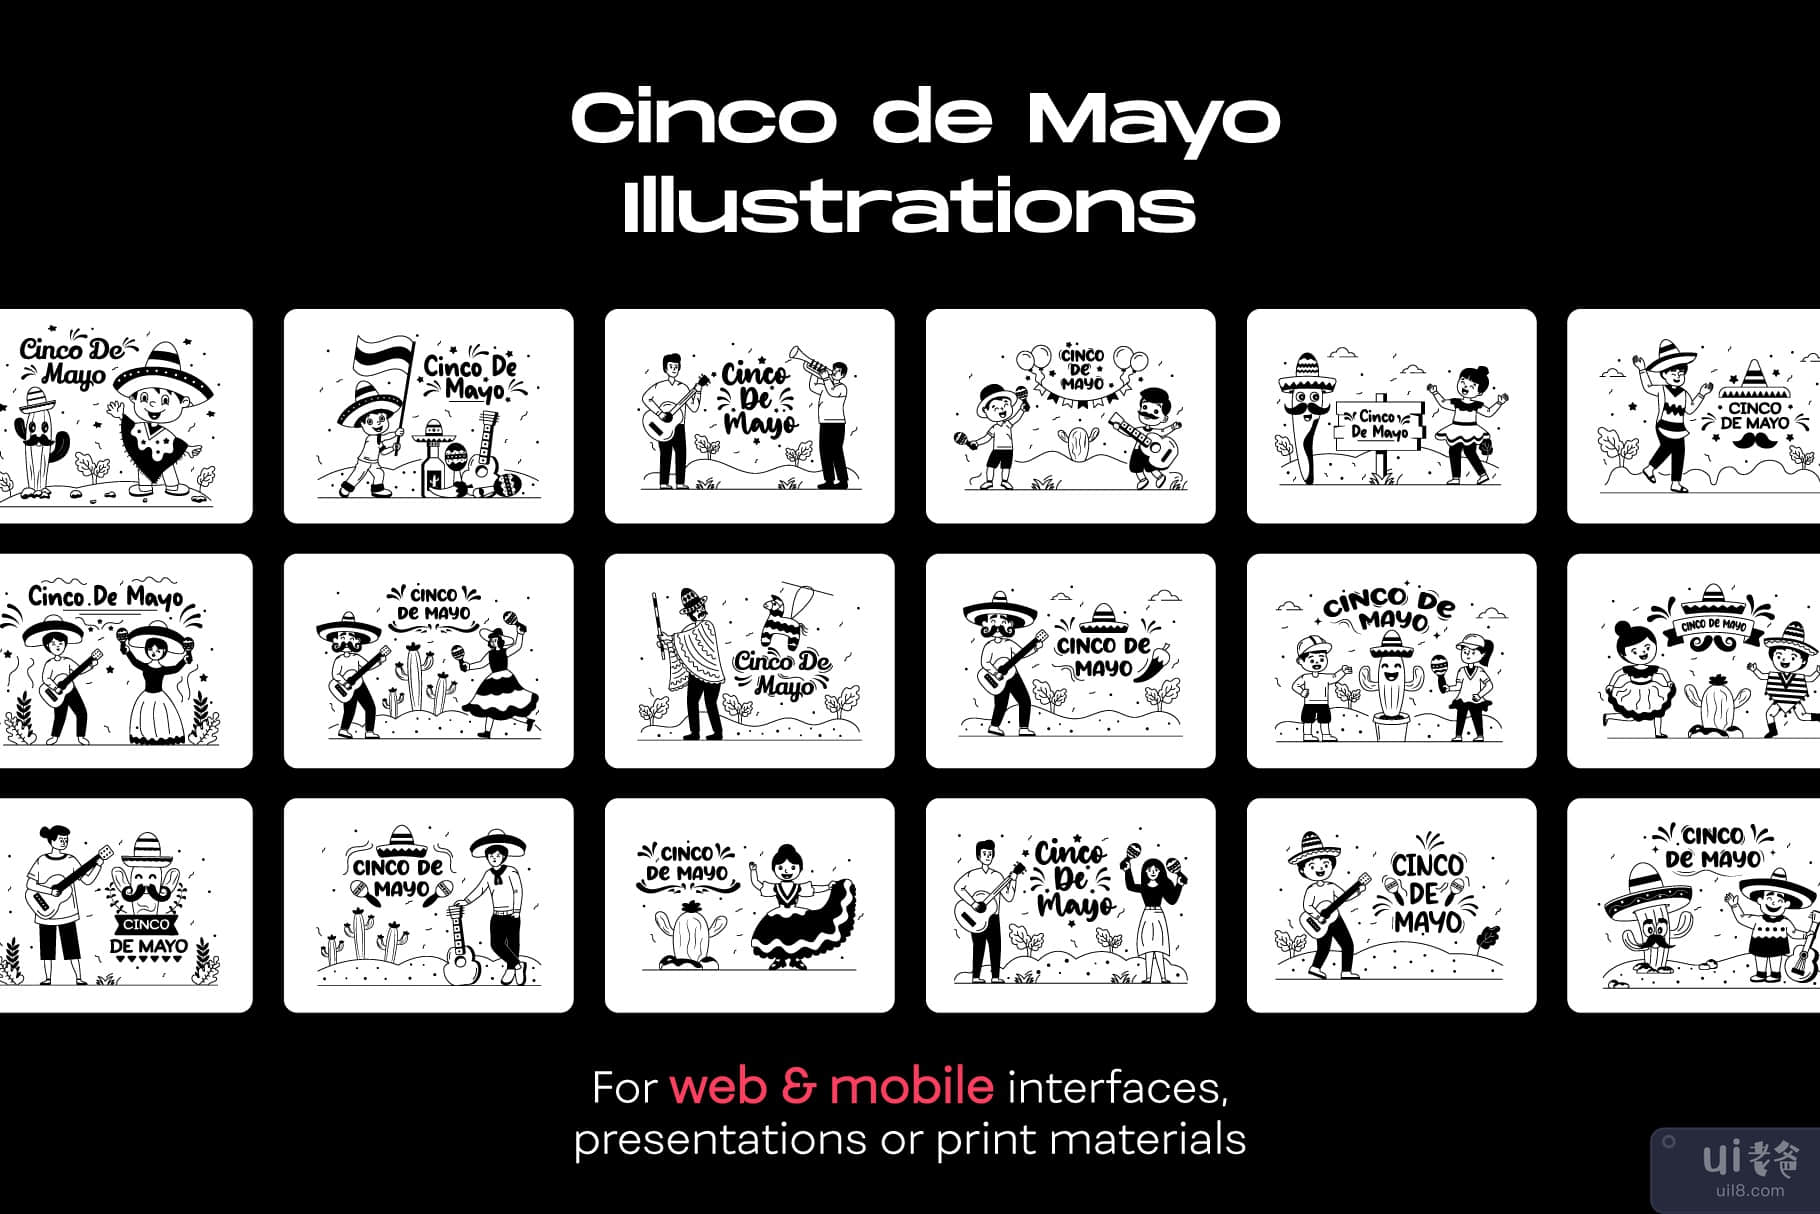 25 个五月五日节插图(25 Cinco de Mayo Illustrations)插图6